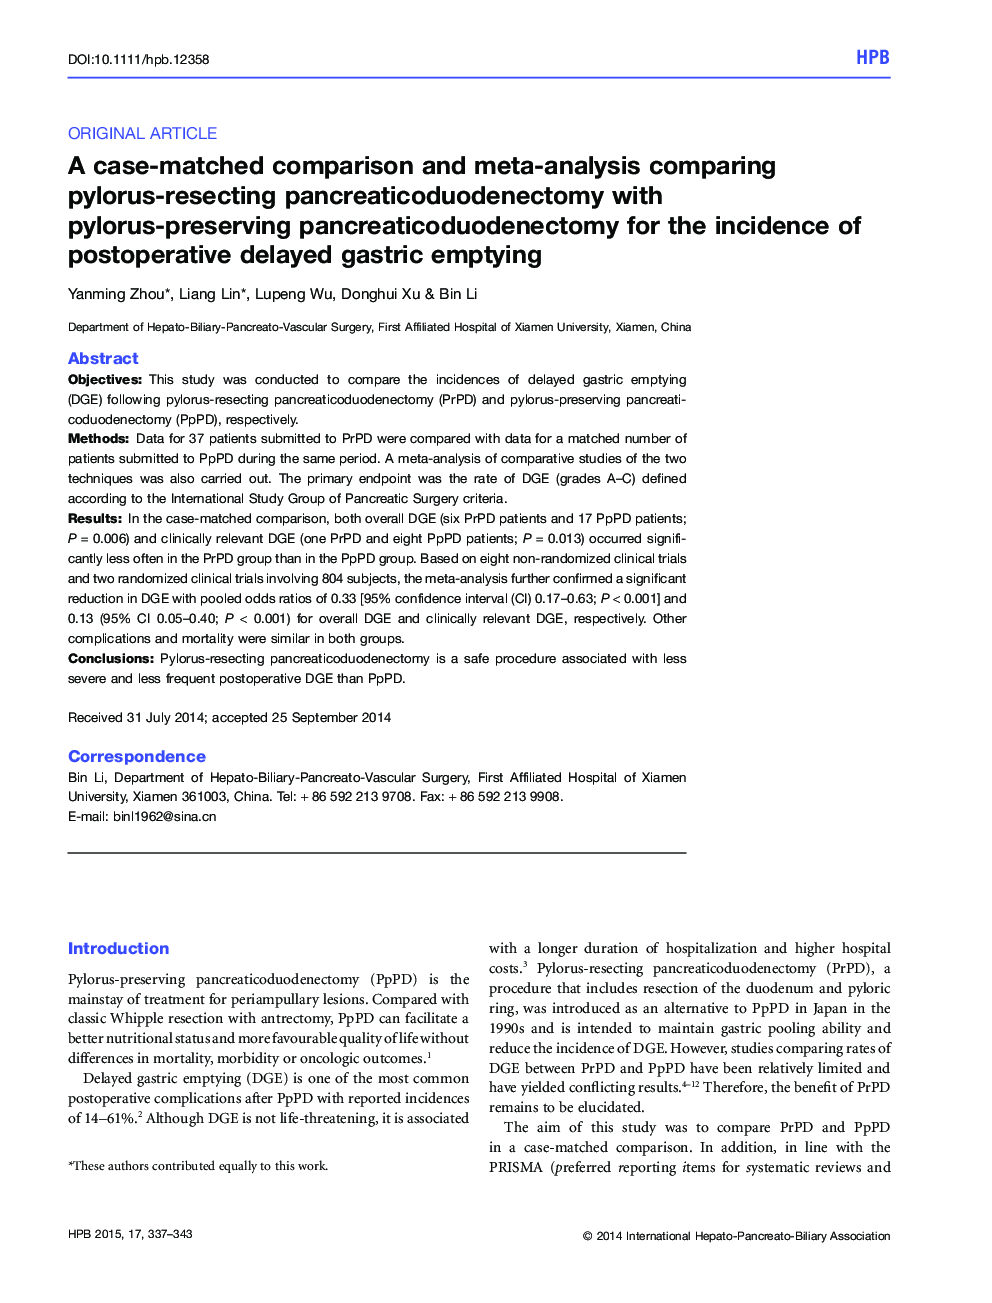 مقایسه و متاآنالیز مقایسه شده با پانکرایت سودوموناسیون پیلوروس پاستوریزاسیون با پانکراس سدیوژنکتومی با پیلوروس در مقایسه با موارد پوسیدگی تخمدان پس از عمل 